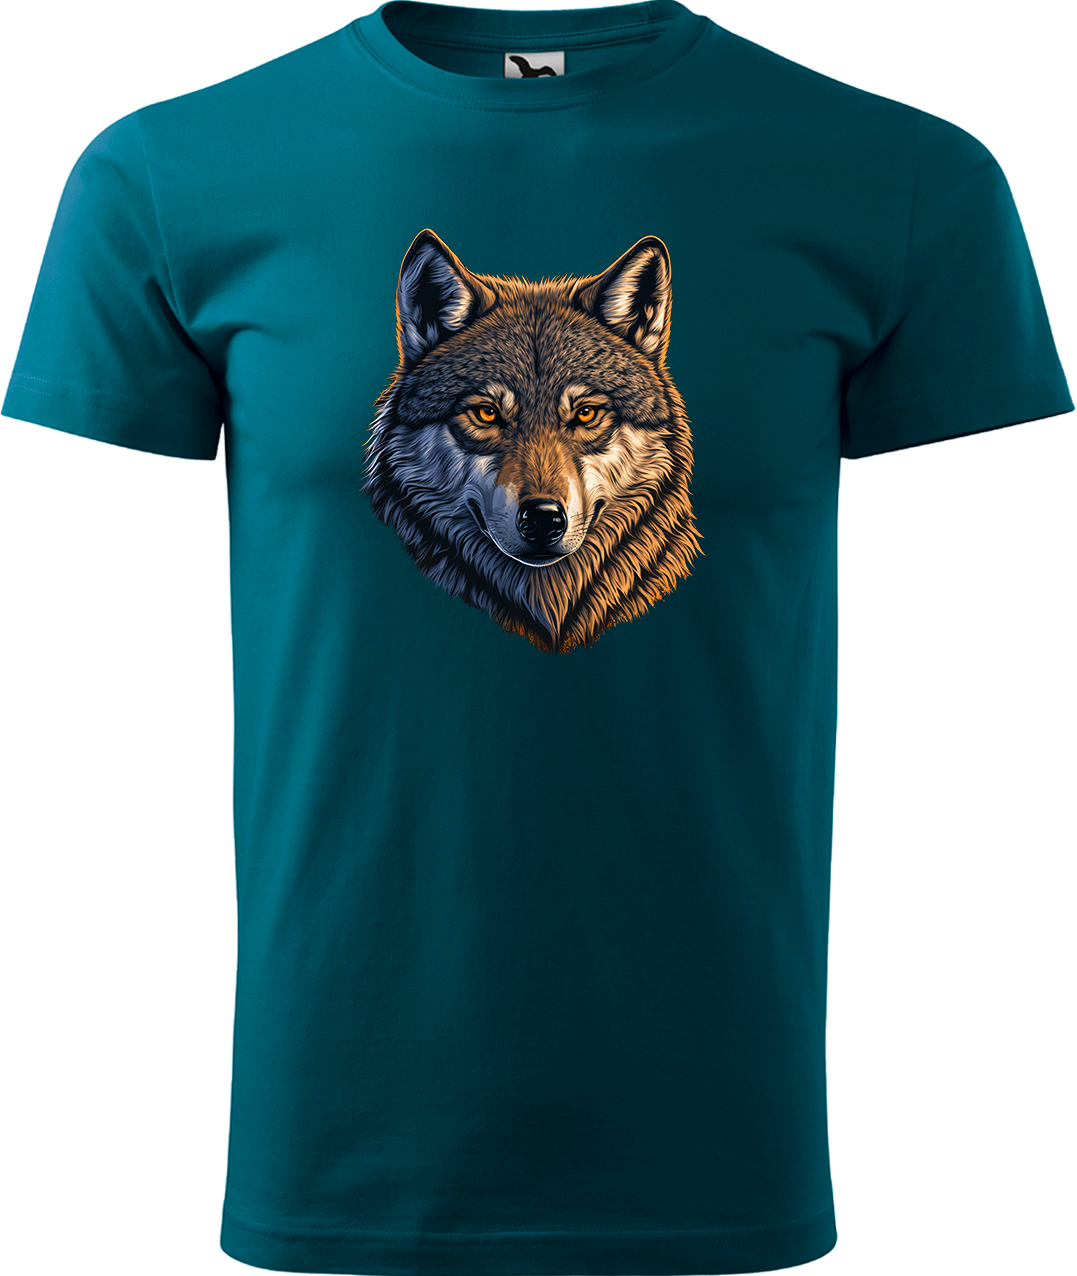 Pánské tričko s vlkem - Hlava vlka Velikost: 3XL, Barva: Petrolejová (93), Střih: pánský